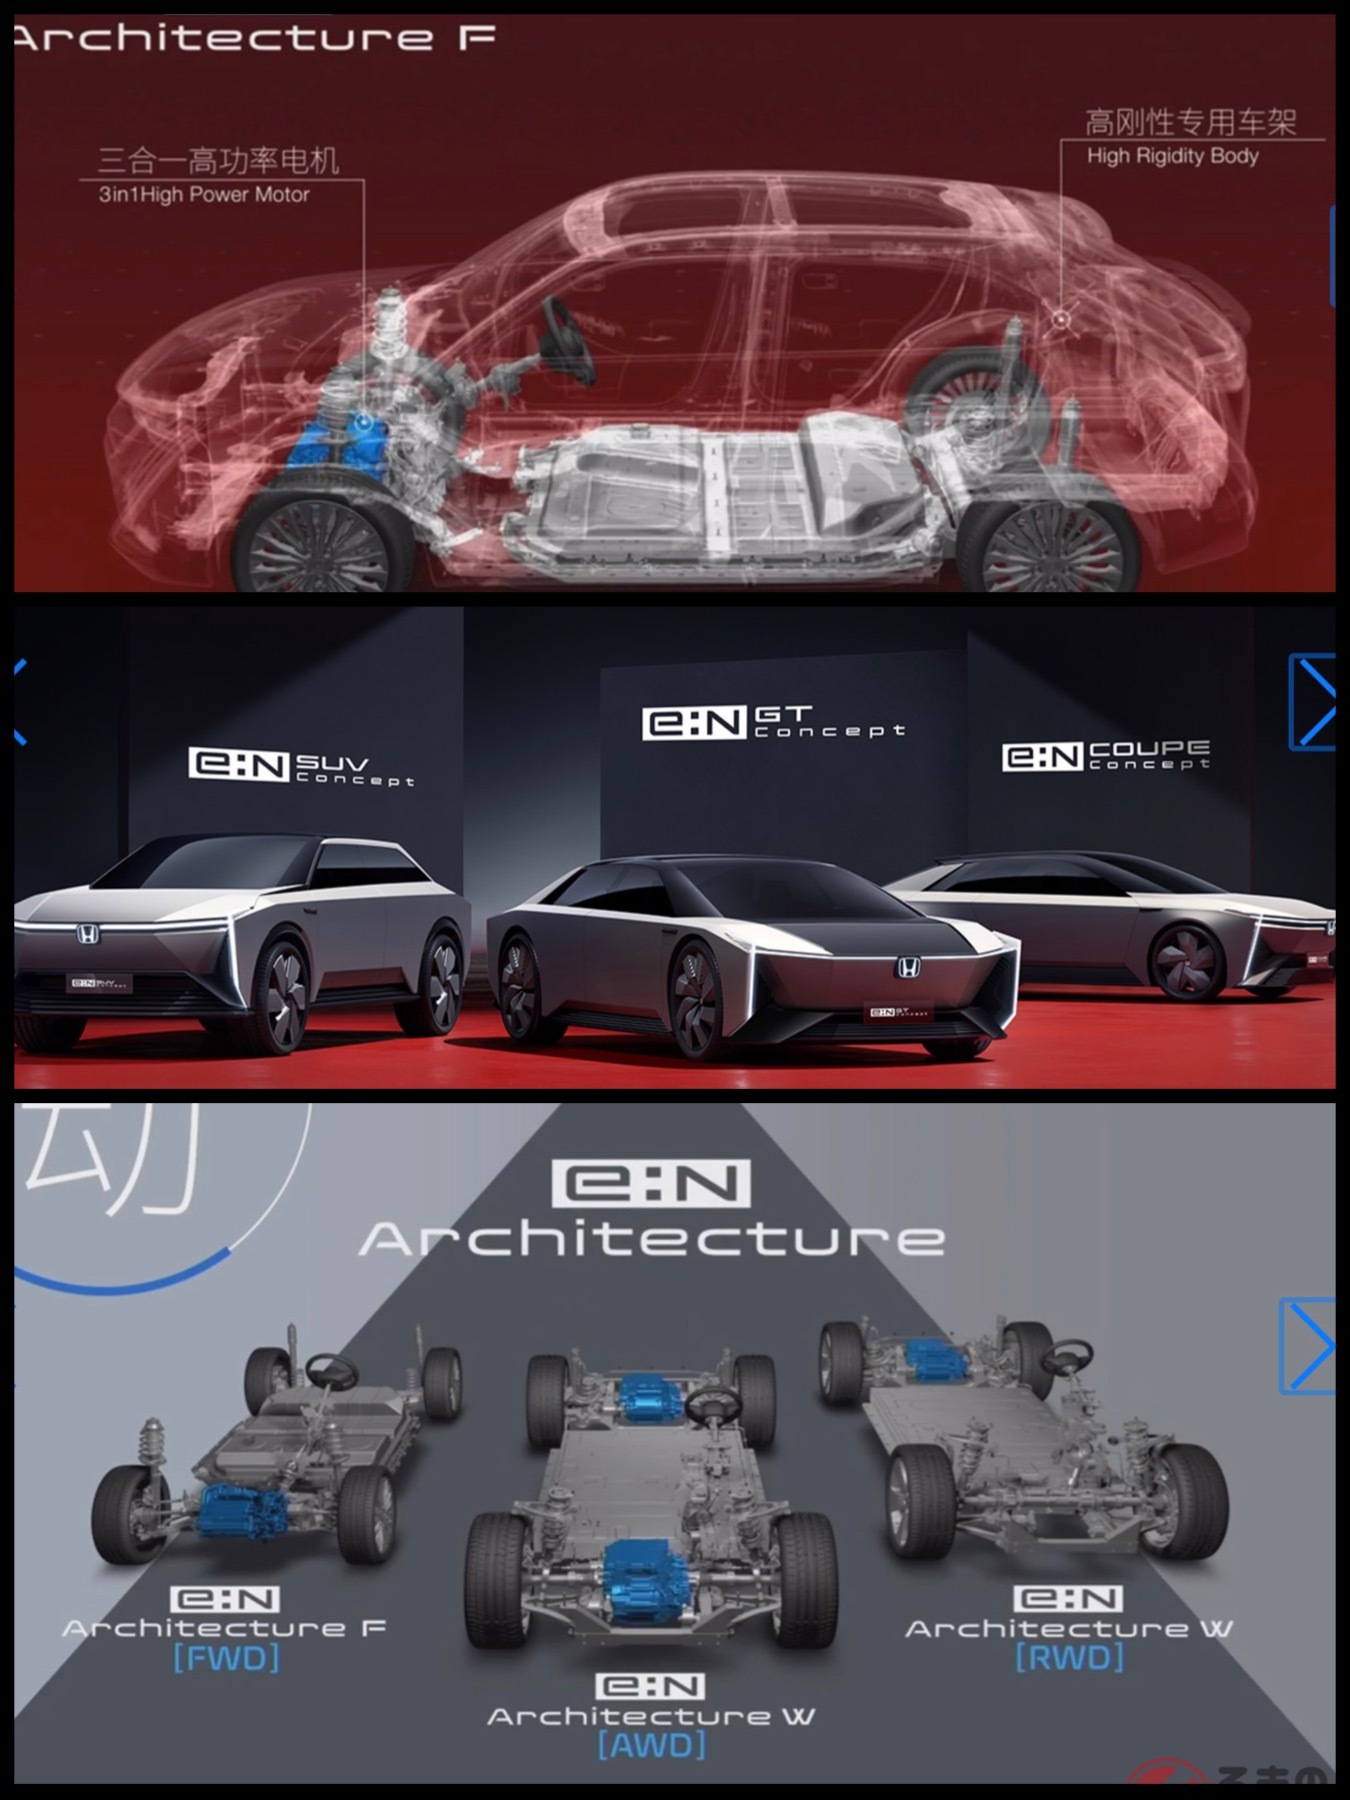 「e：Nアーキテクチャ」「e：N COUPE Concept」「e：N SUV Concept」「e：N GT Concept」